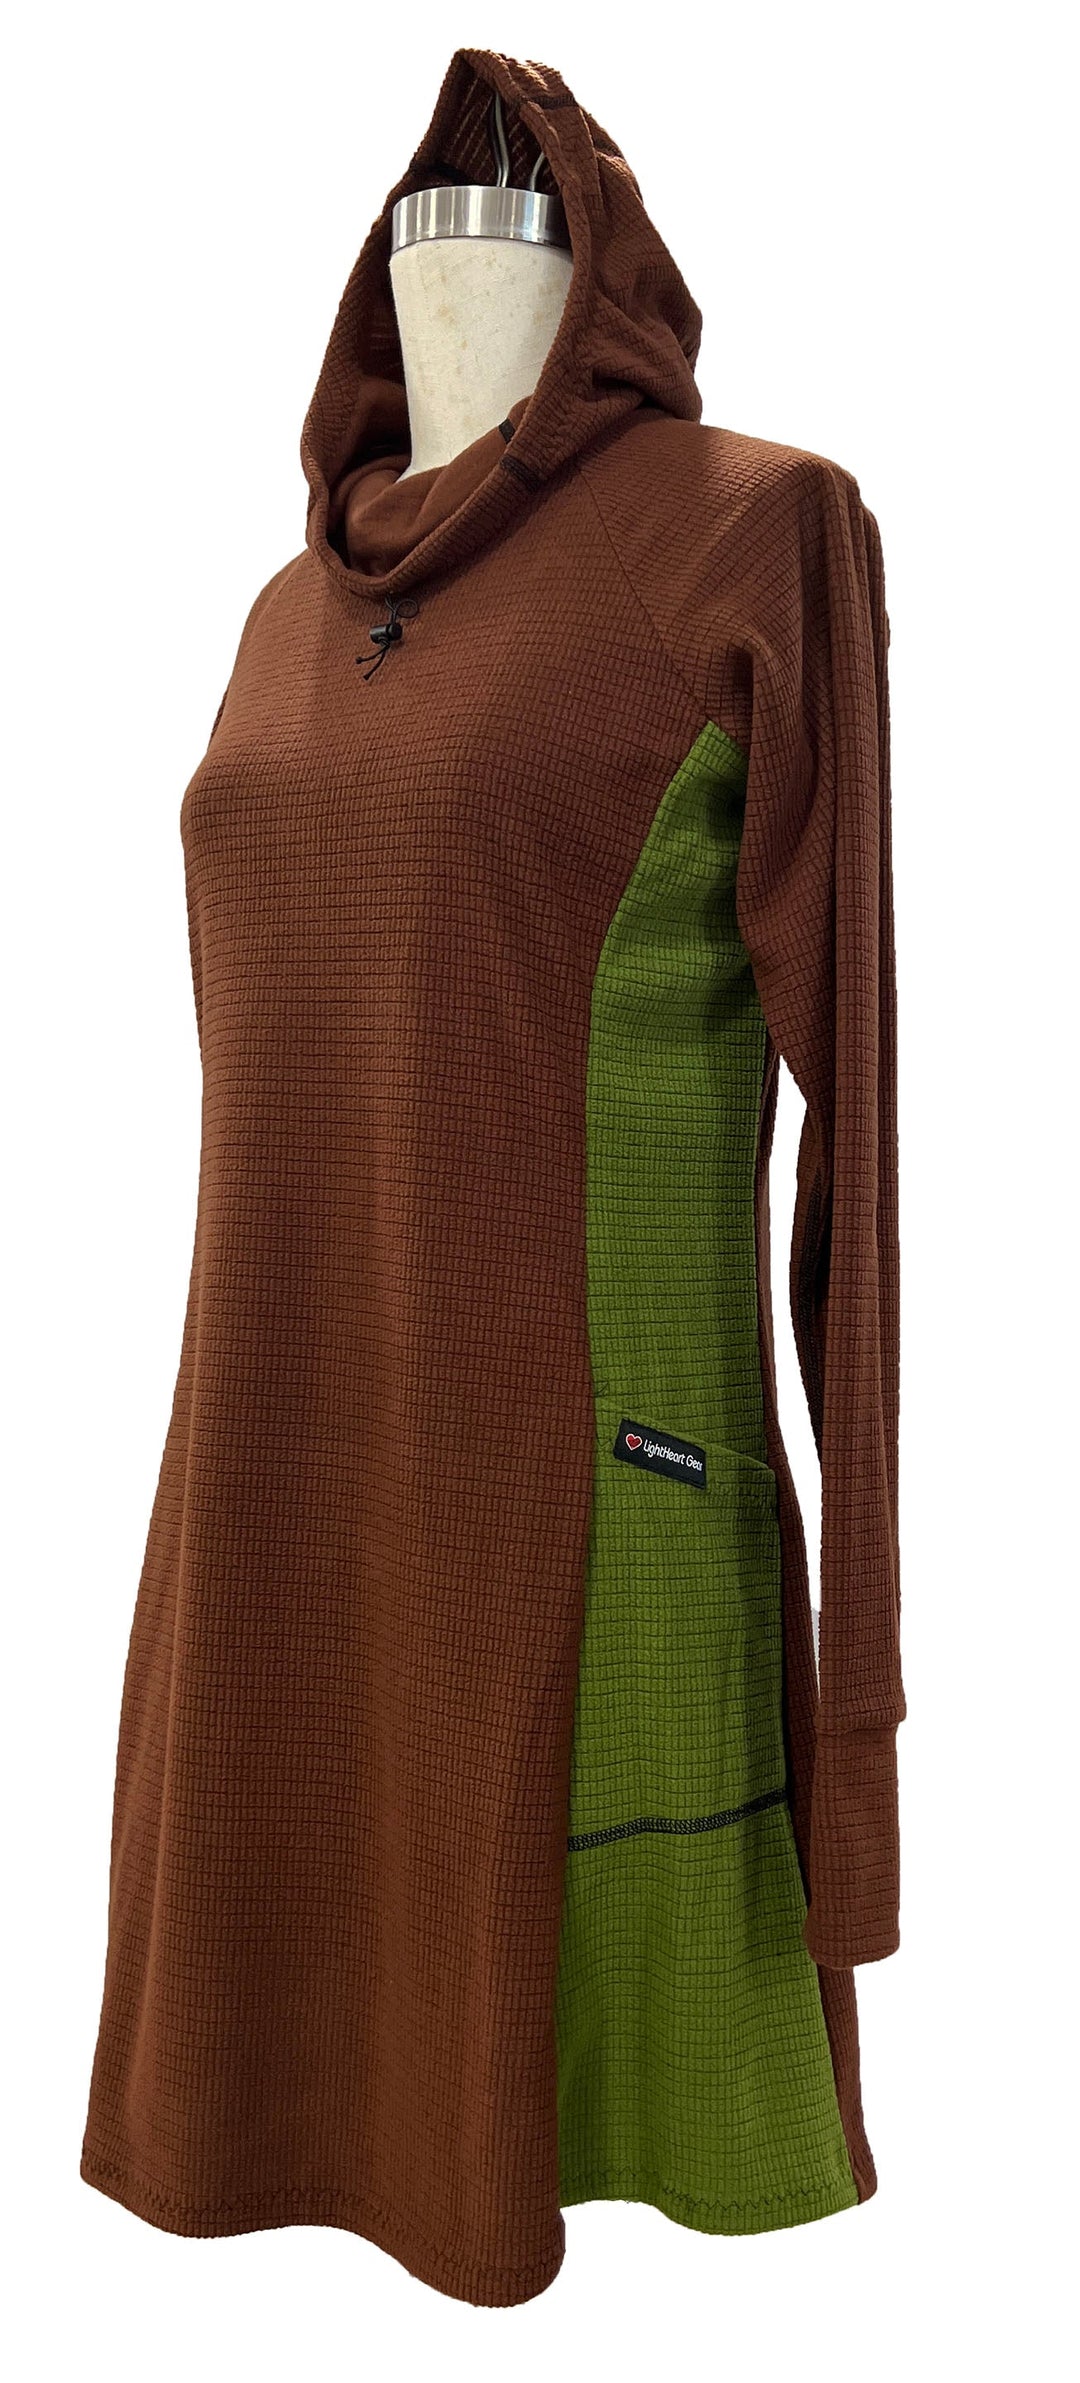 Fleece dress - Brown & Green sides